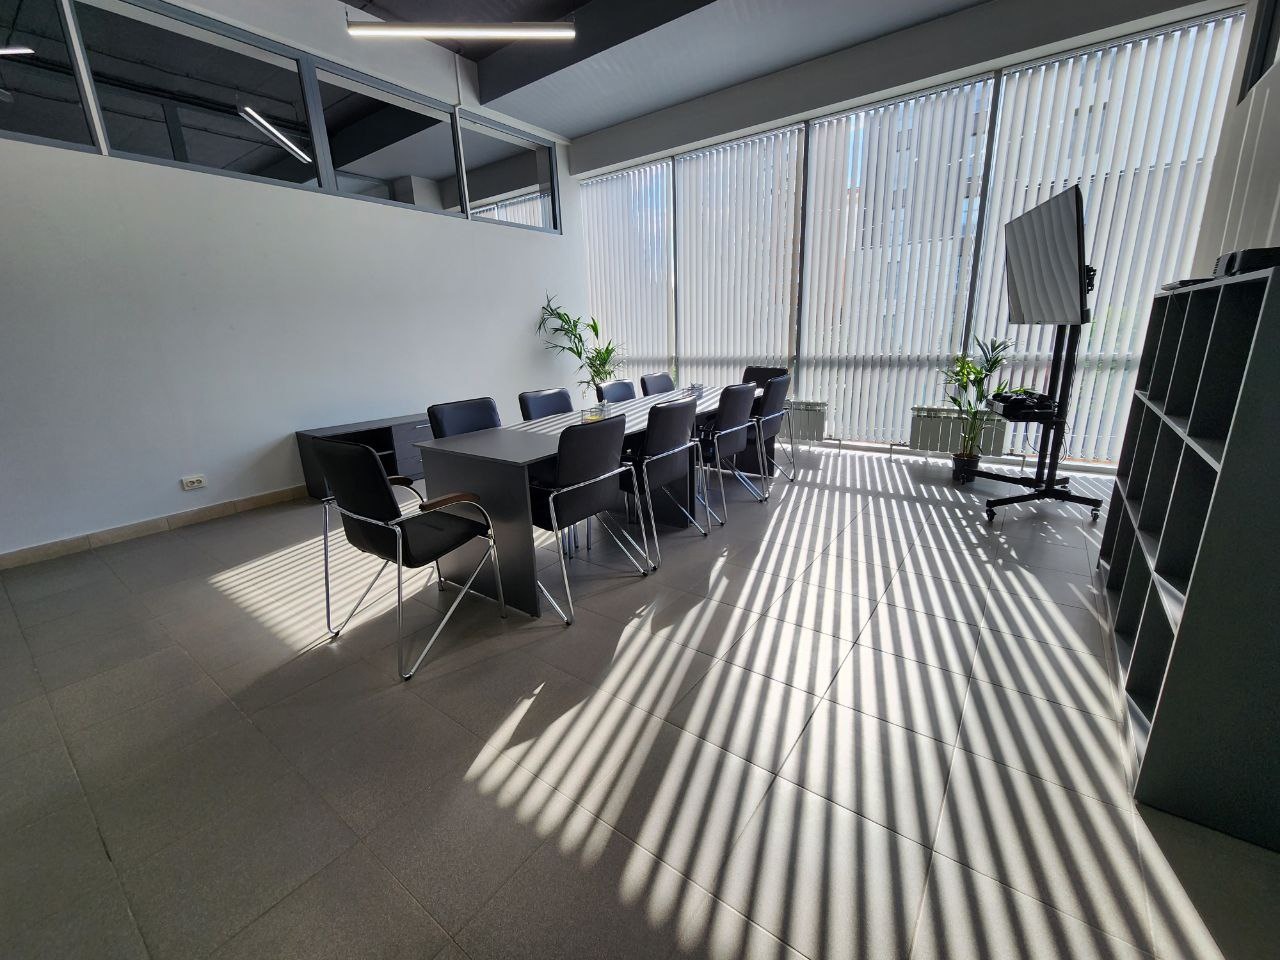 Компания ООО "СИГМА" переехала в новый современный и просторный офис.